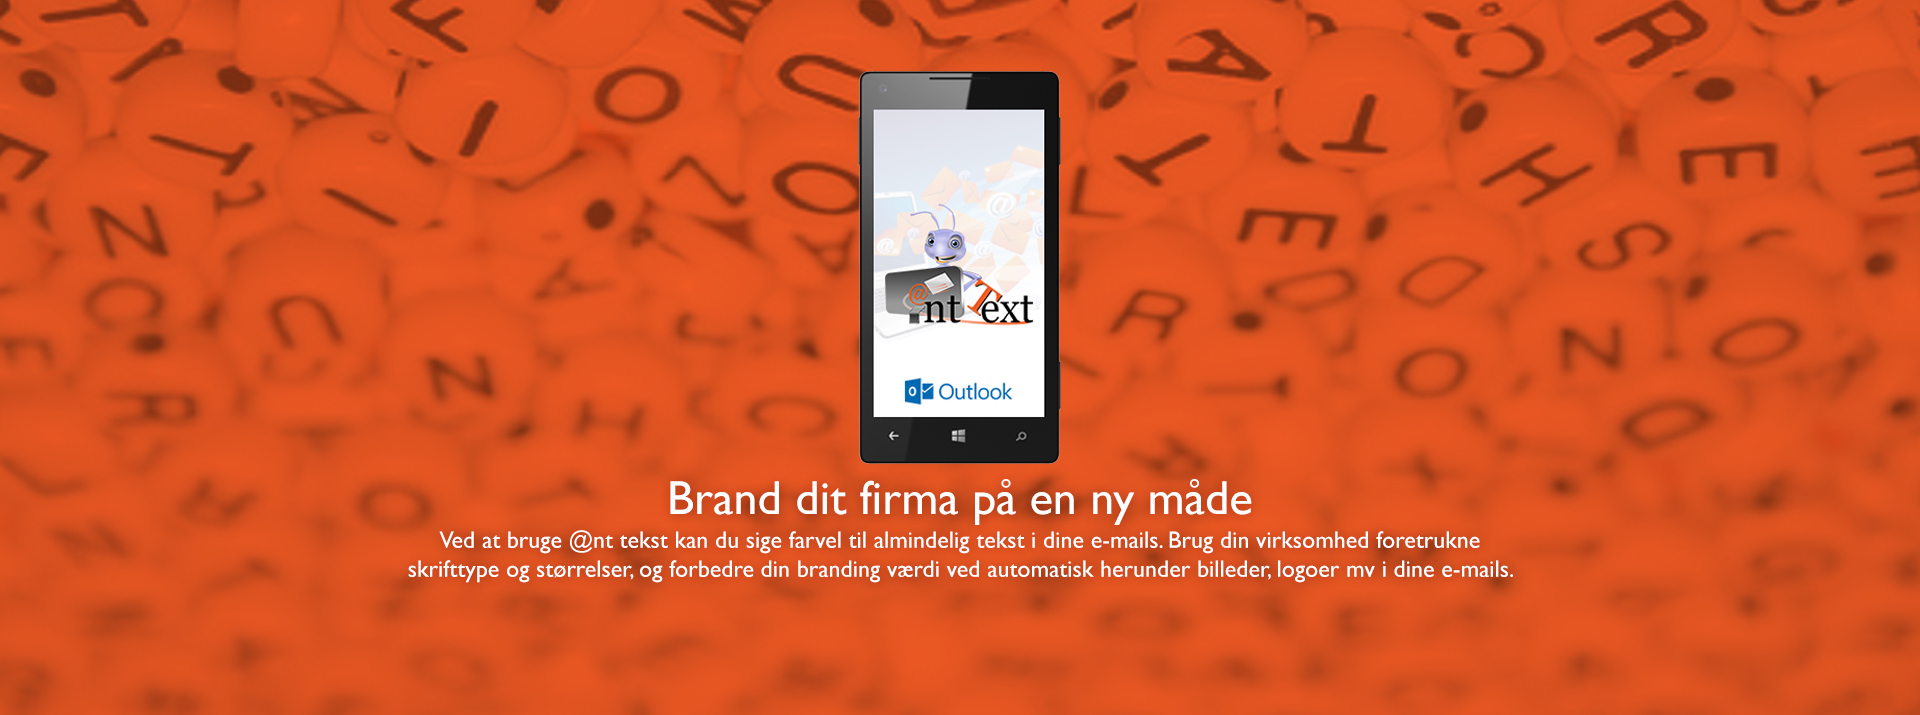 Header med mobil - skærm viser Ant Text og Outlook logos - Tekst Brand dit firma på en ny måde